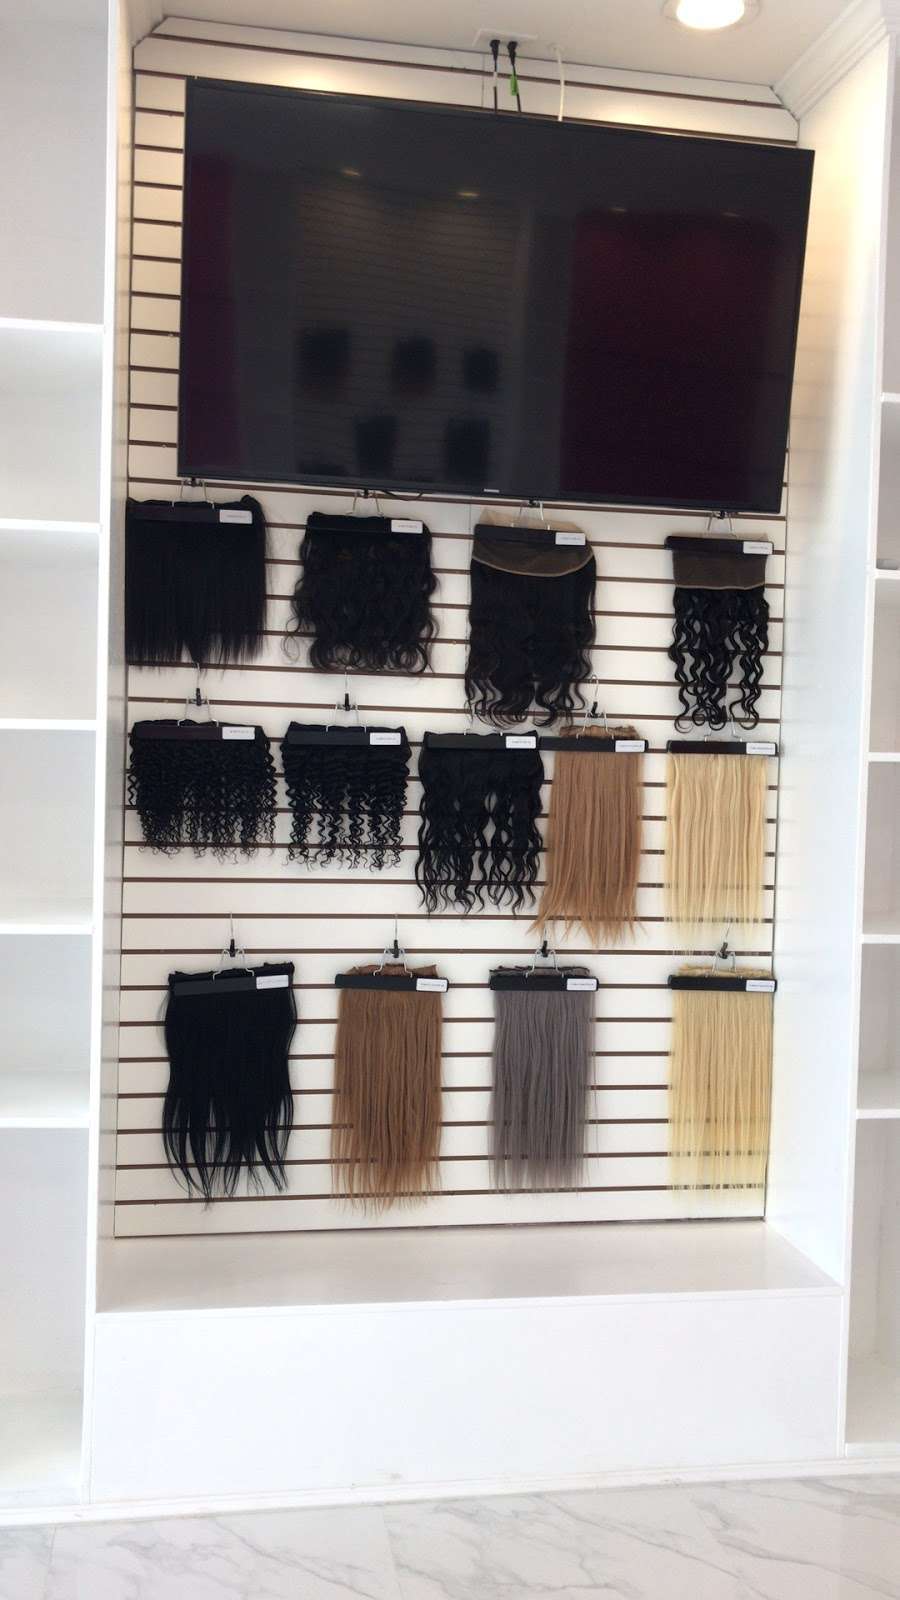 UNice Hair | 20220 S Avalon Blvd # A, Carson, CA 90746 | Phone: (310) 838-3454